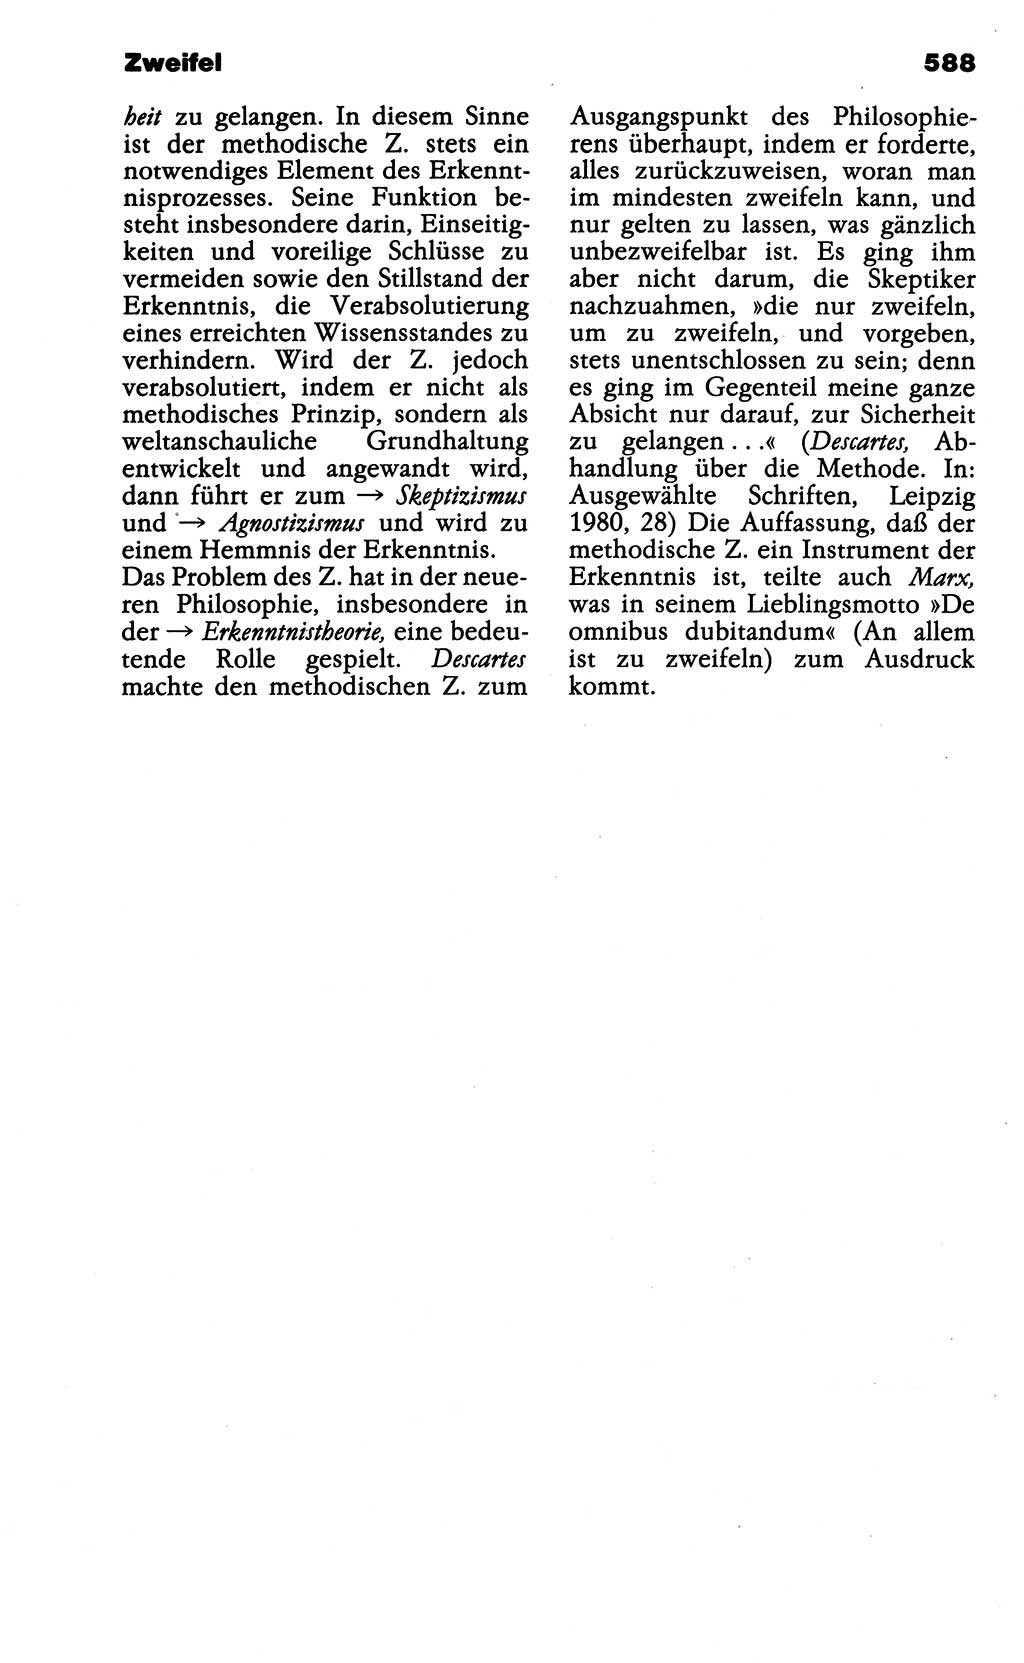 Wörterbuch der marxistisch-leninistischen Philosophie [Deutsche Demokratische Republik (DDR)] 1985, Seite 588 (Wb. ML Phil. DDR 1985, S. 588)